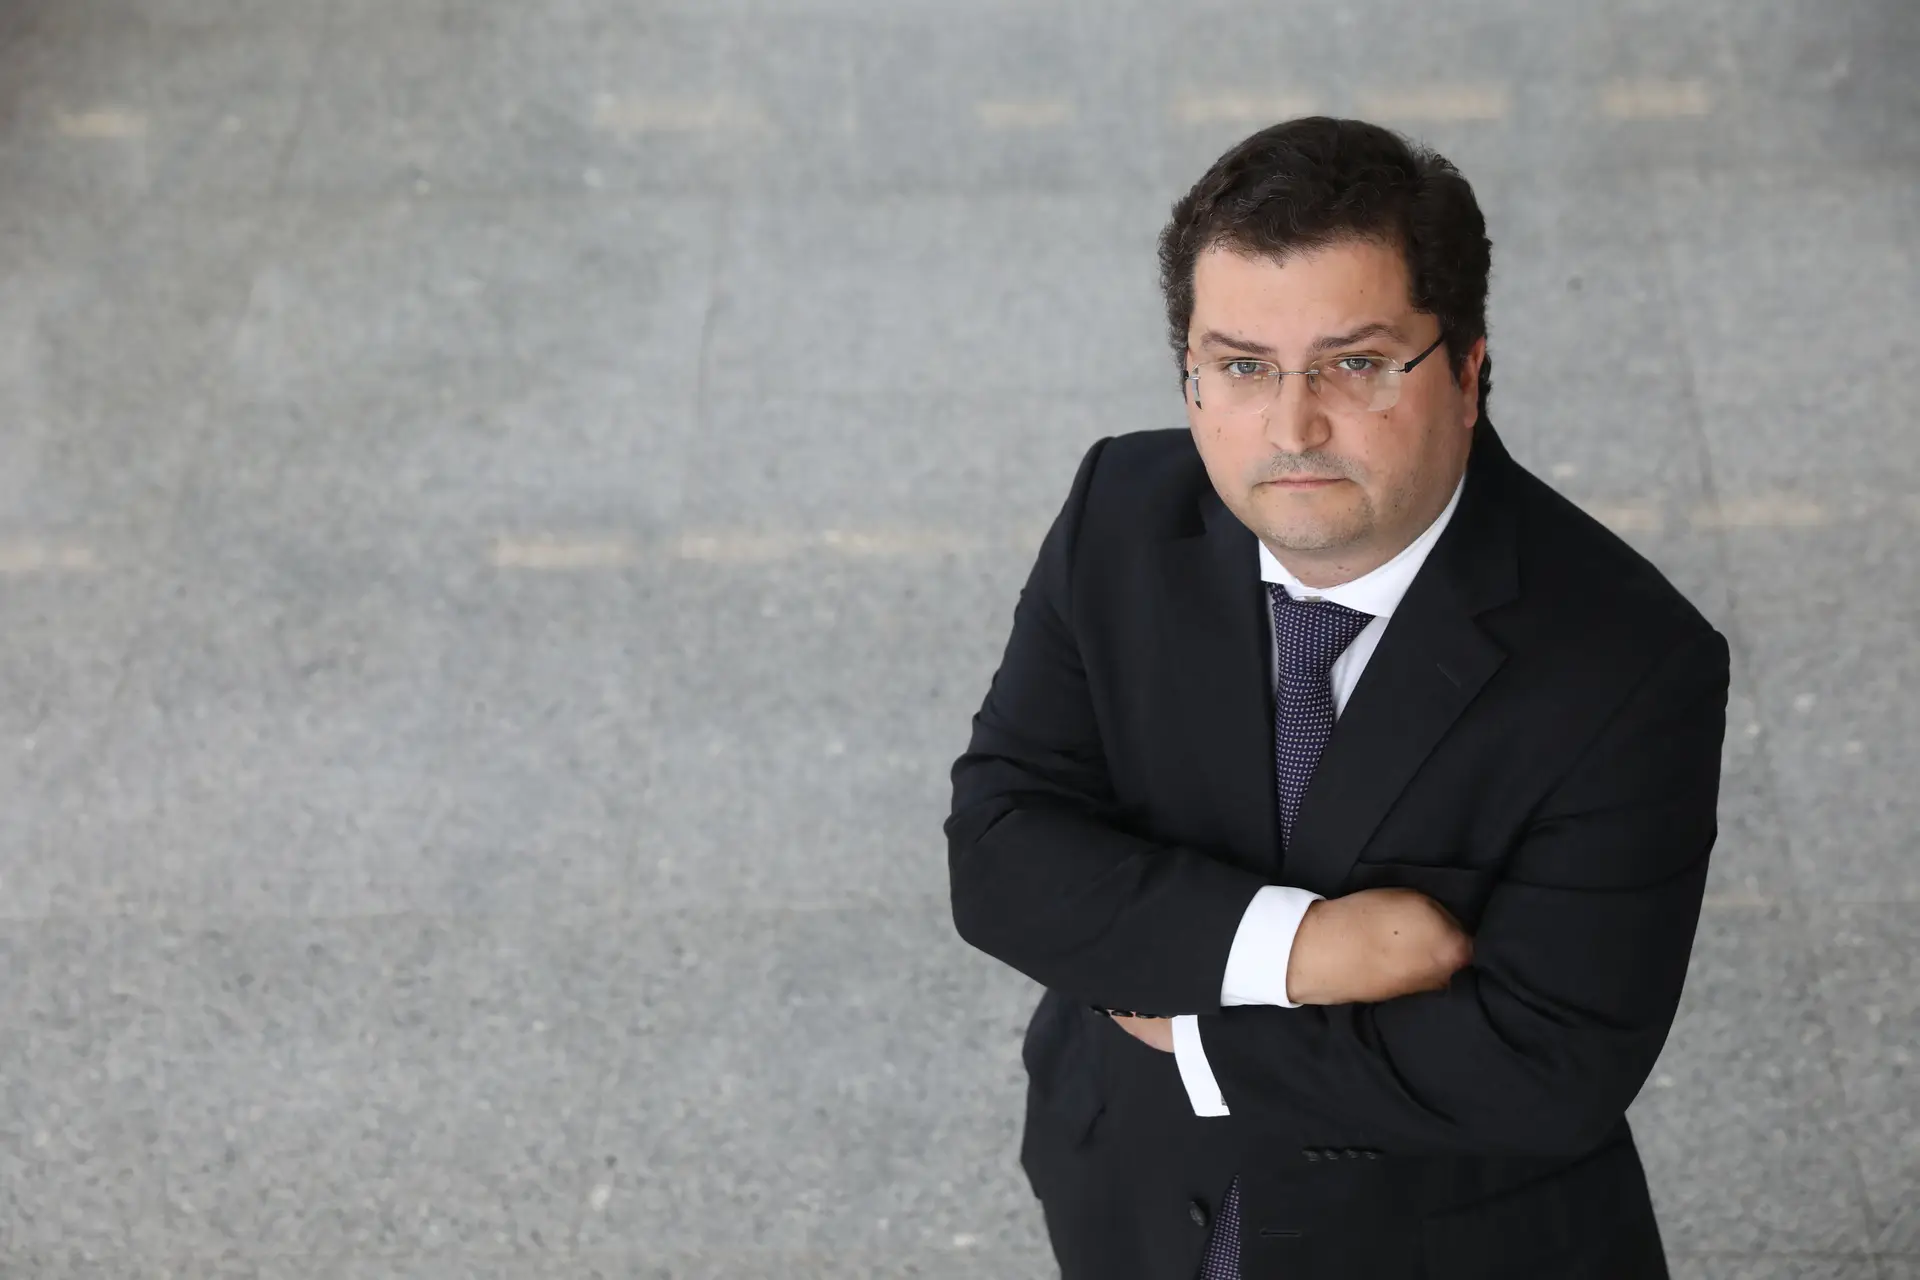 Líder parlamentar do PSD defende acordo para redução de IRC, mas aponta “total descoordenação” no Governo